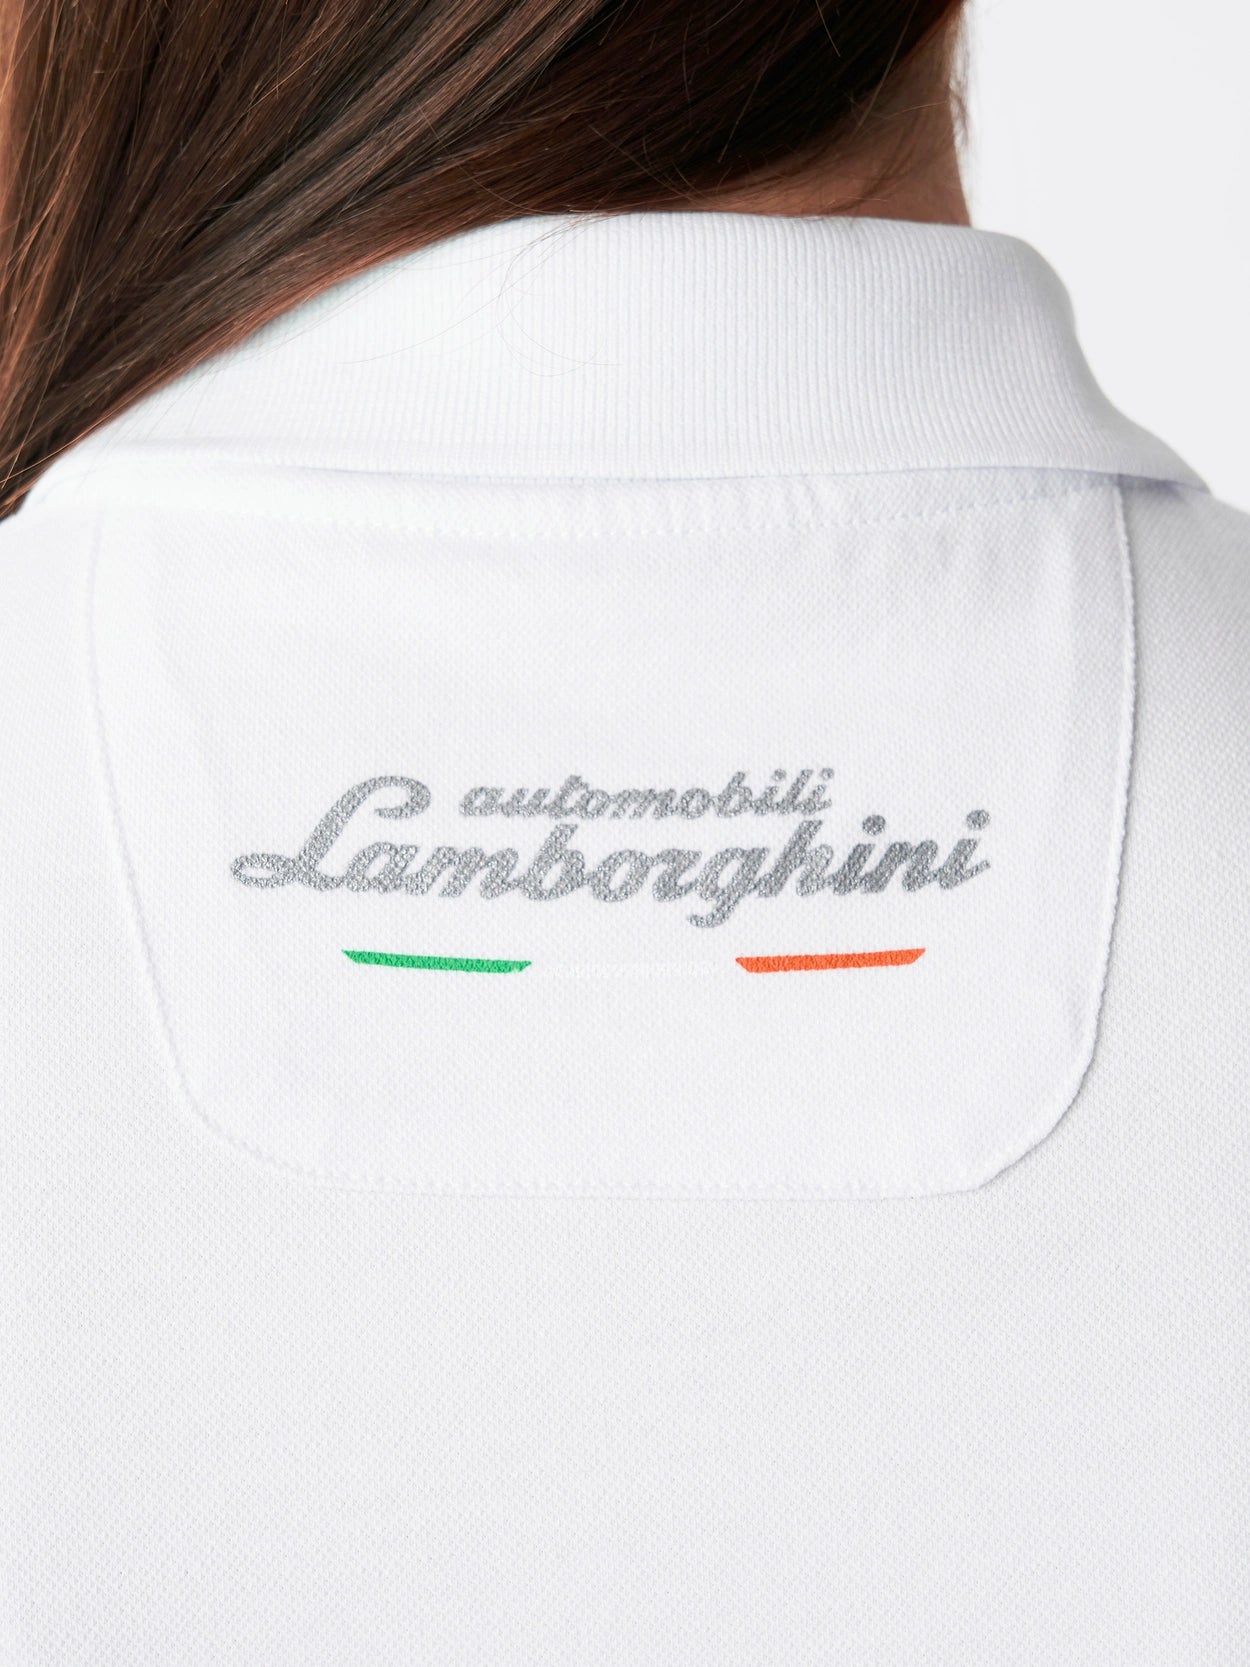 Automobili Lamborghini Women's 60th Anniversary Polo